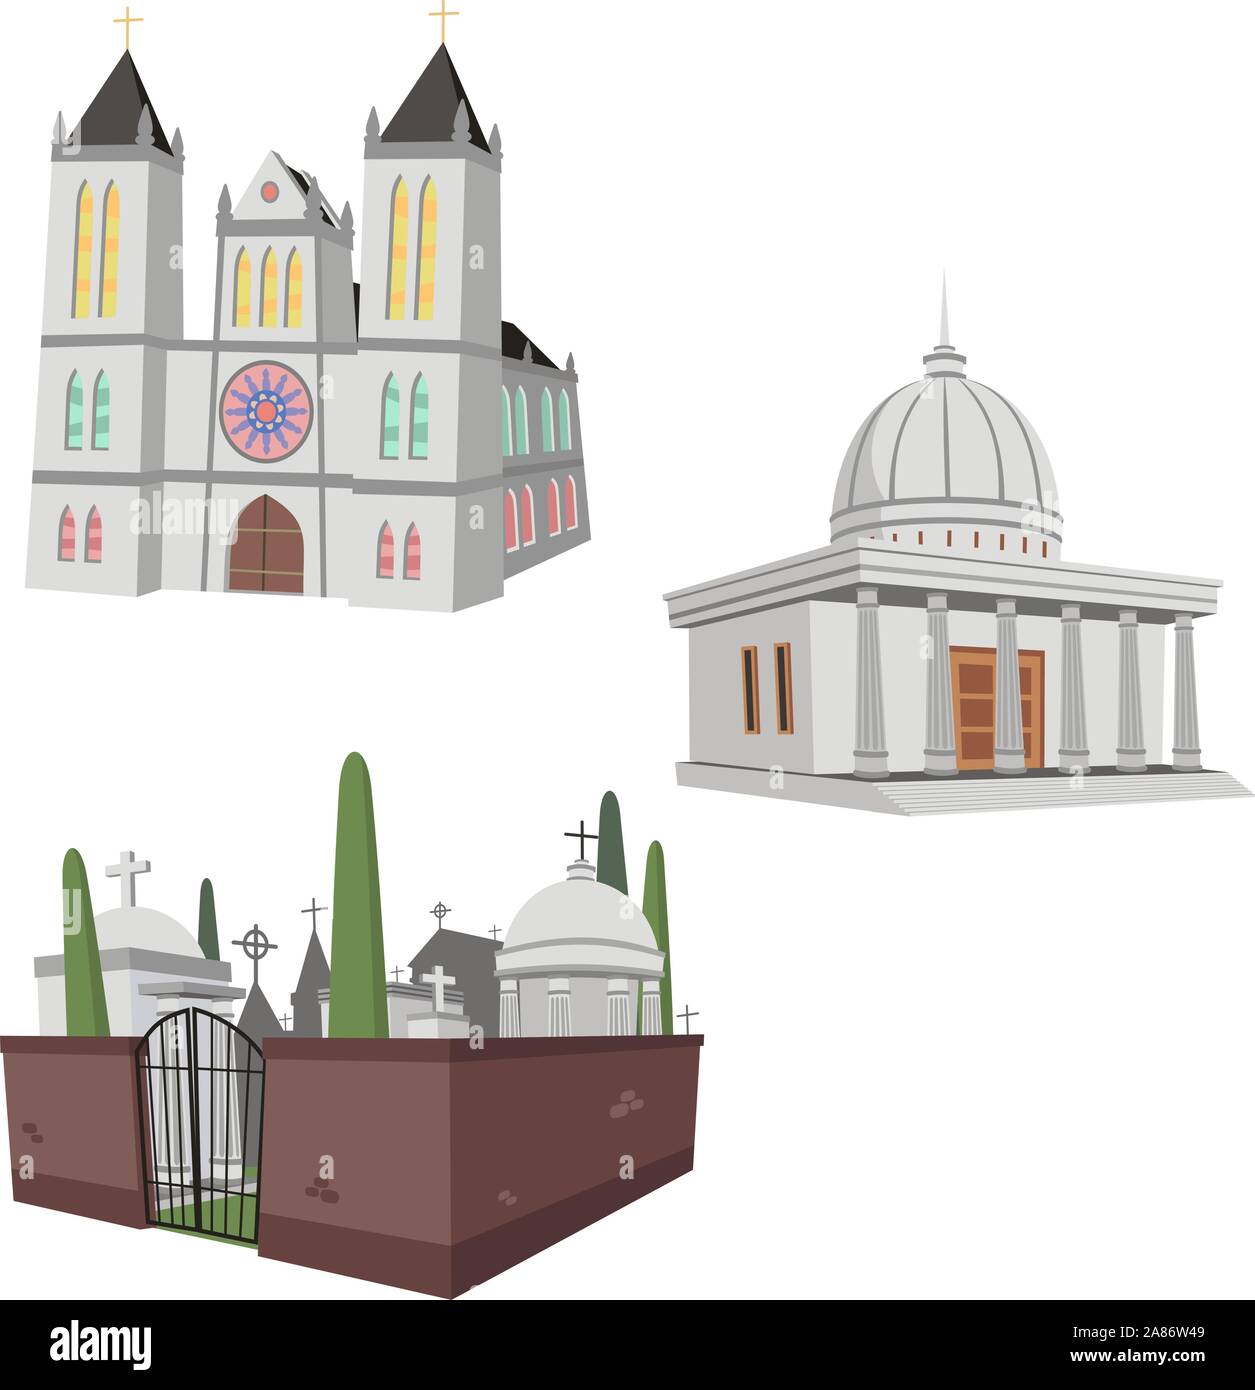 Illustration de 3 bâtiments publics dont une cathédrale, cimetière et une construction publique générique. Illustration de Vecteur